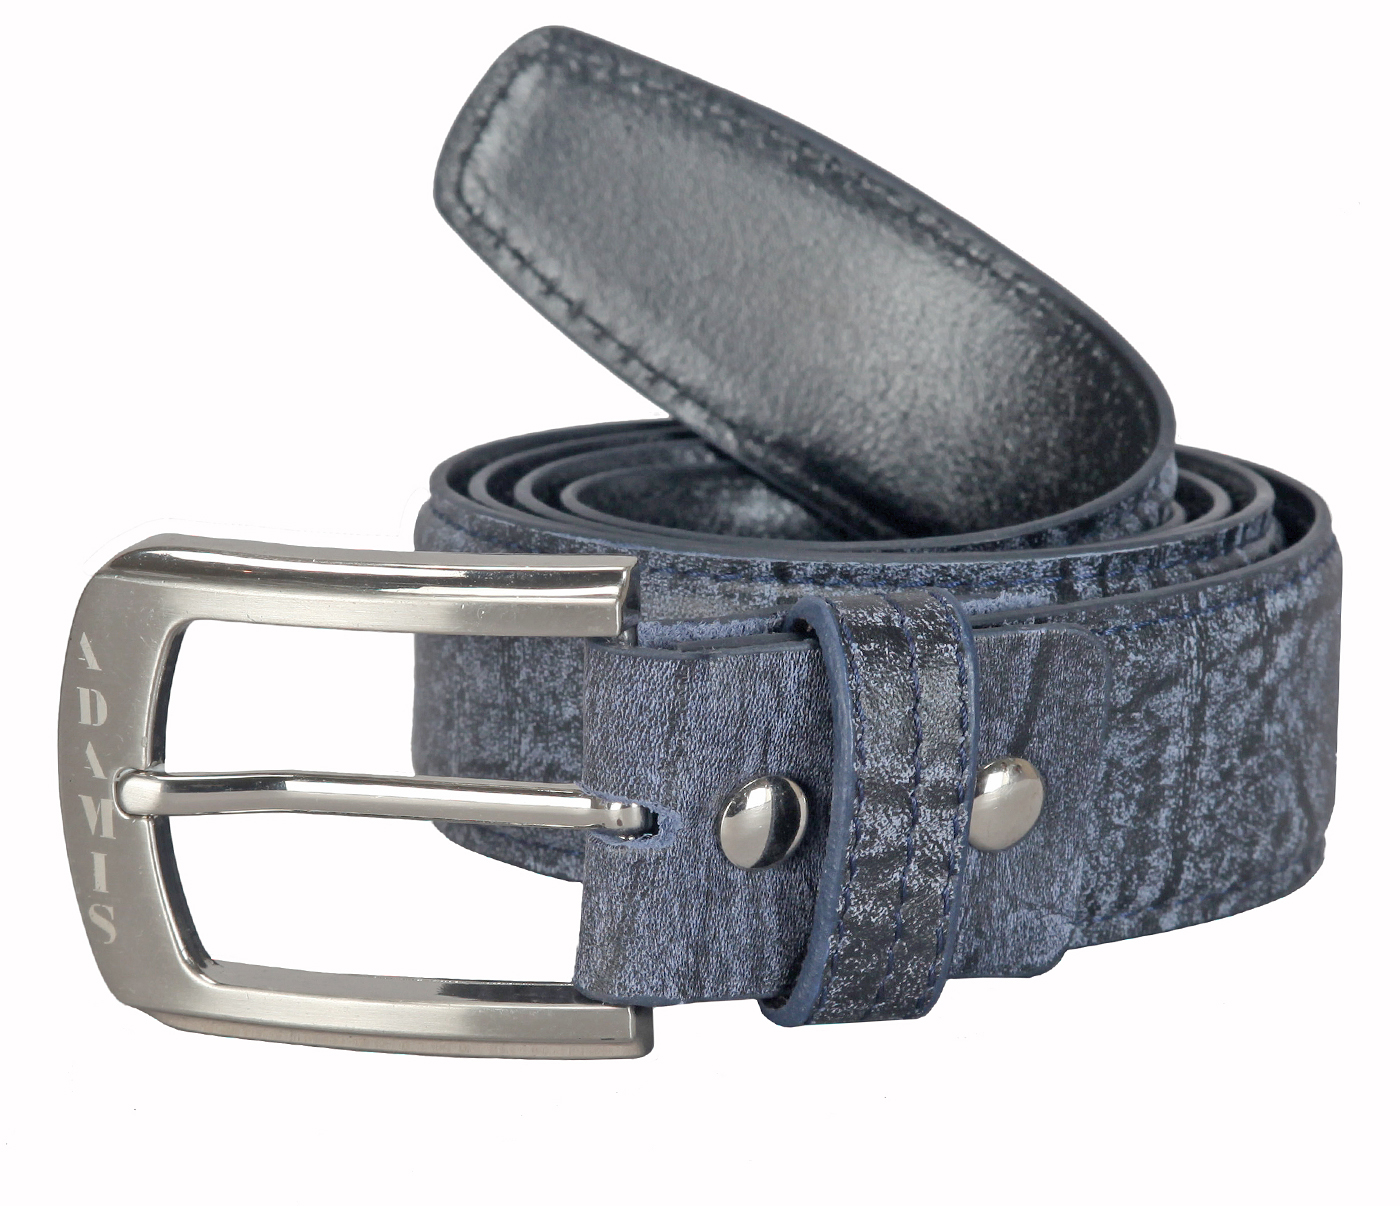 BL167--Men's stylish Casual wear belt in Genuine Leather - Black